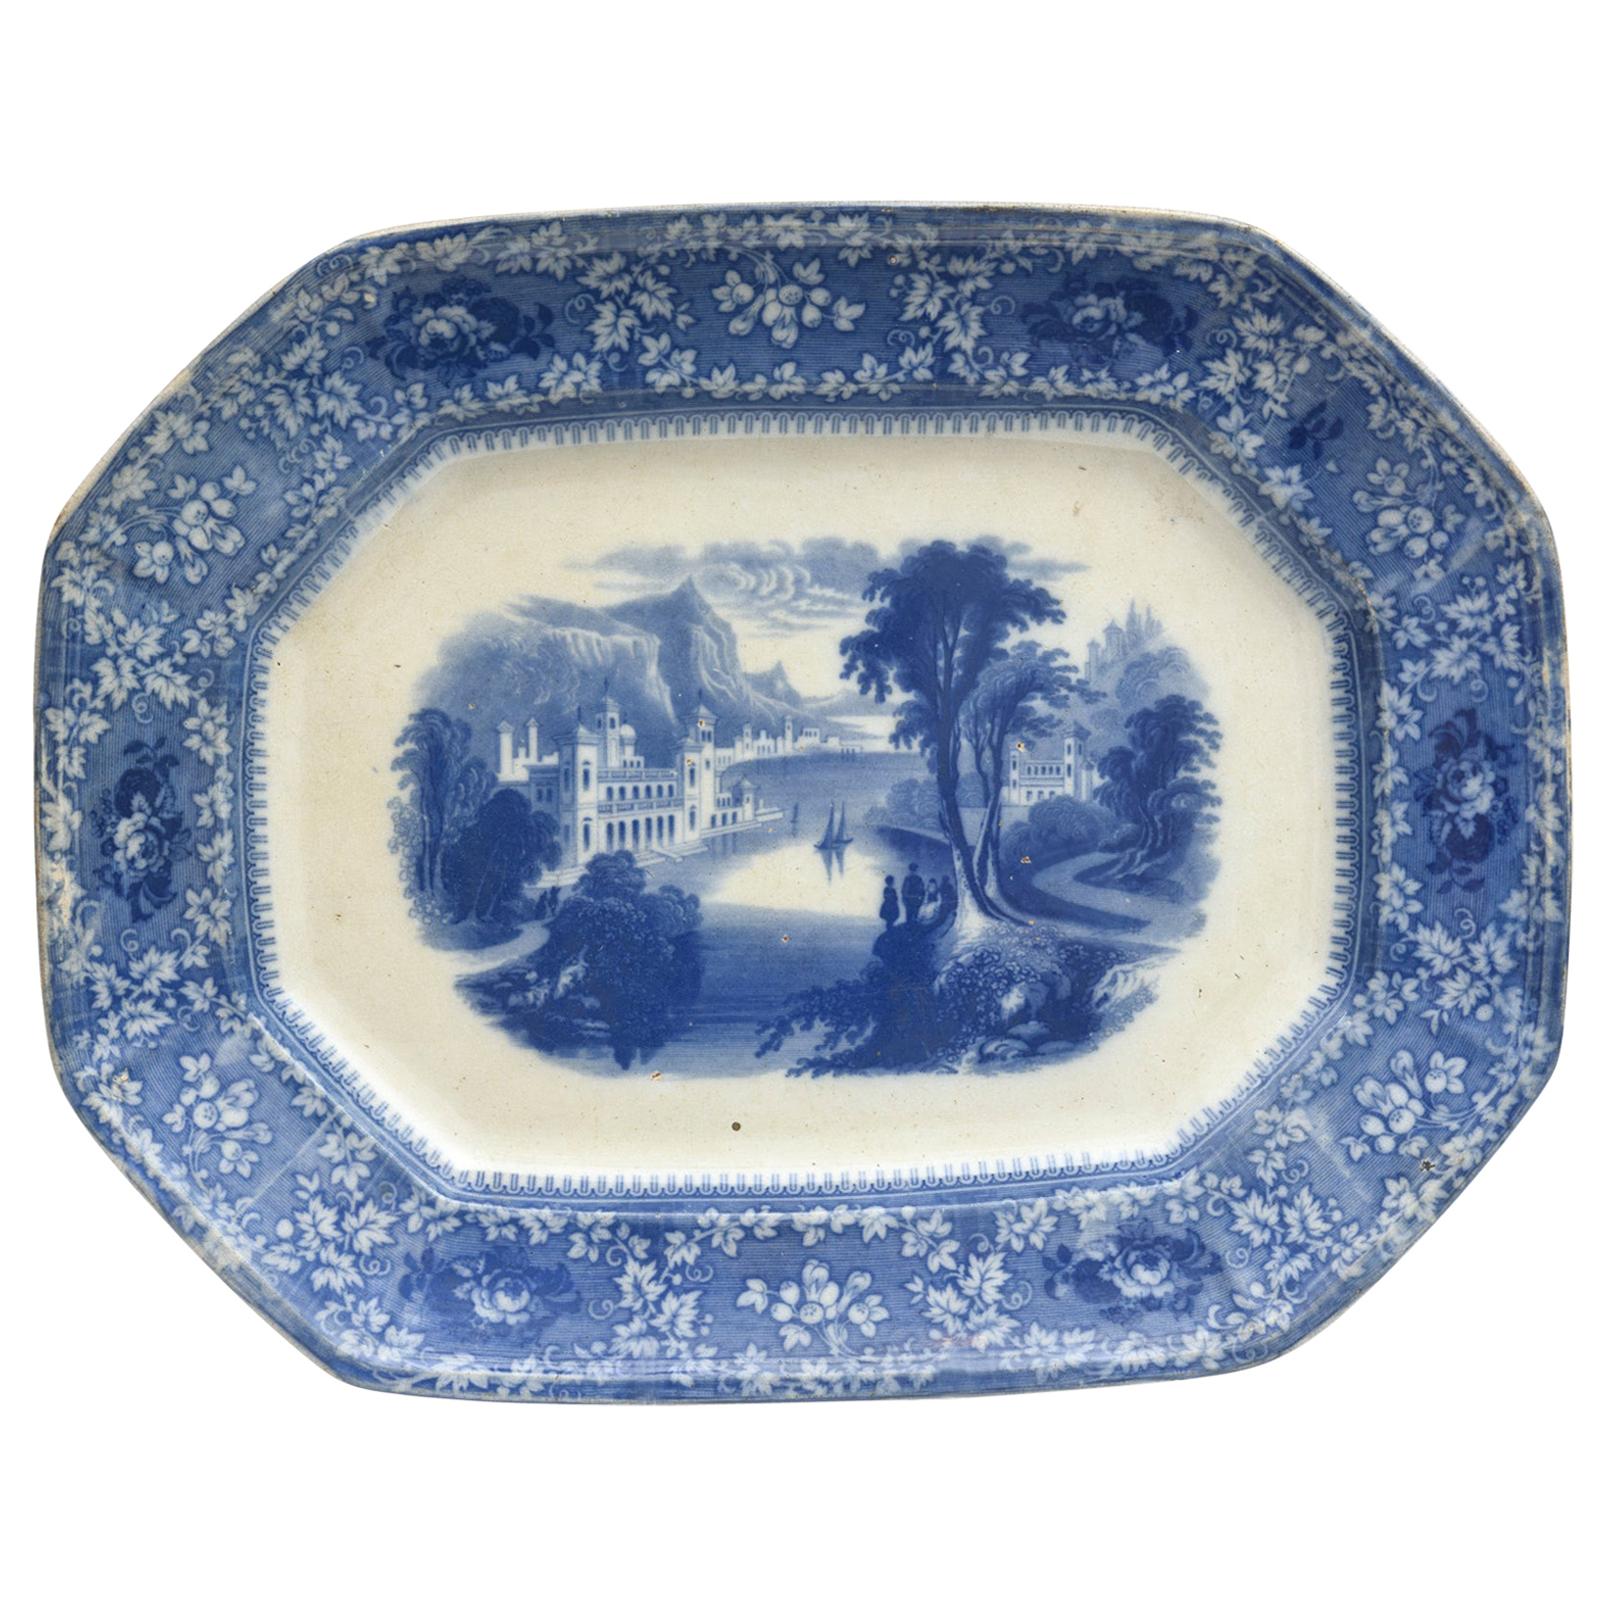 Antique Flo Blue Platter, "Milan" Large, circa 1860